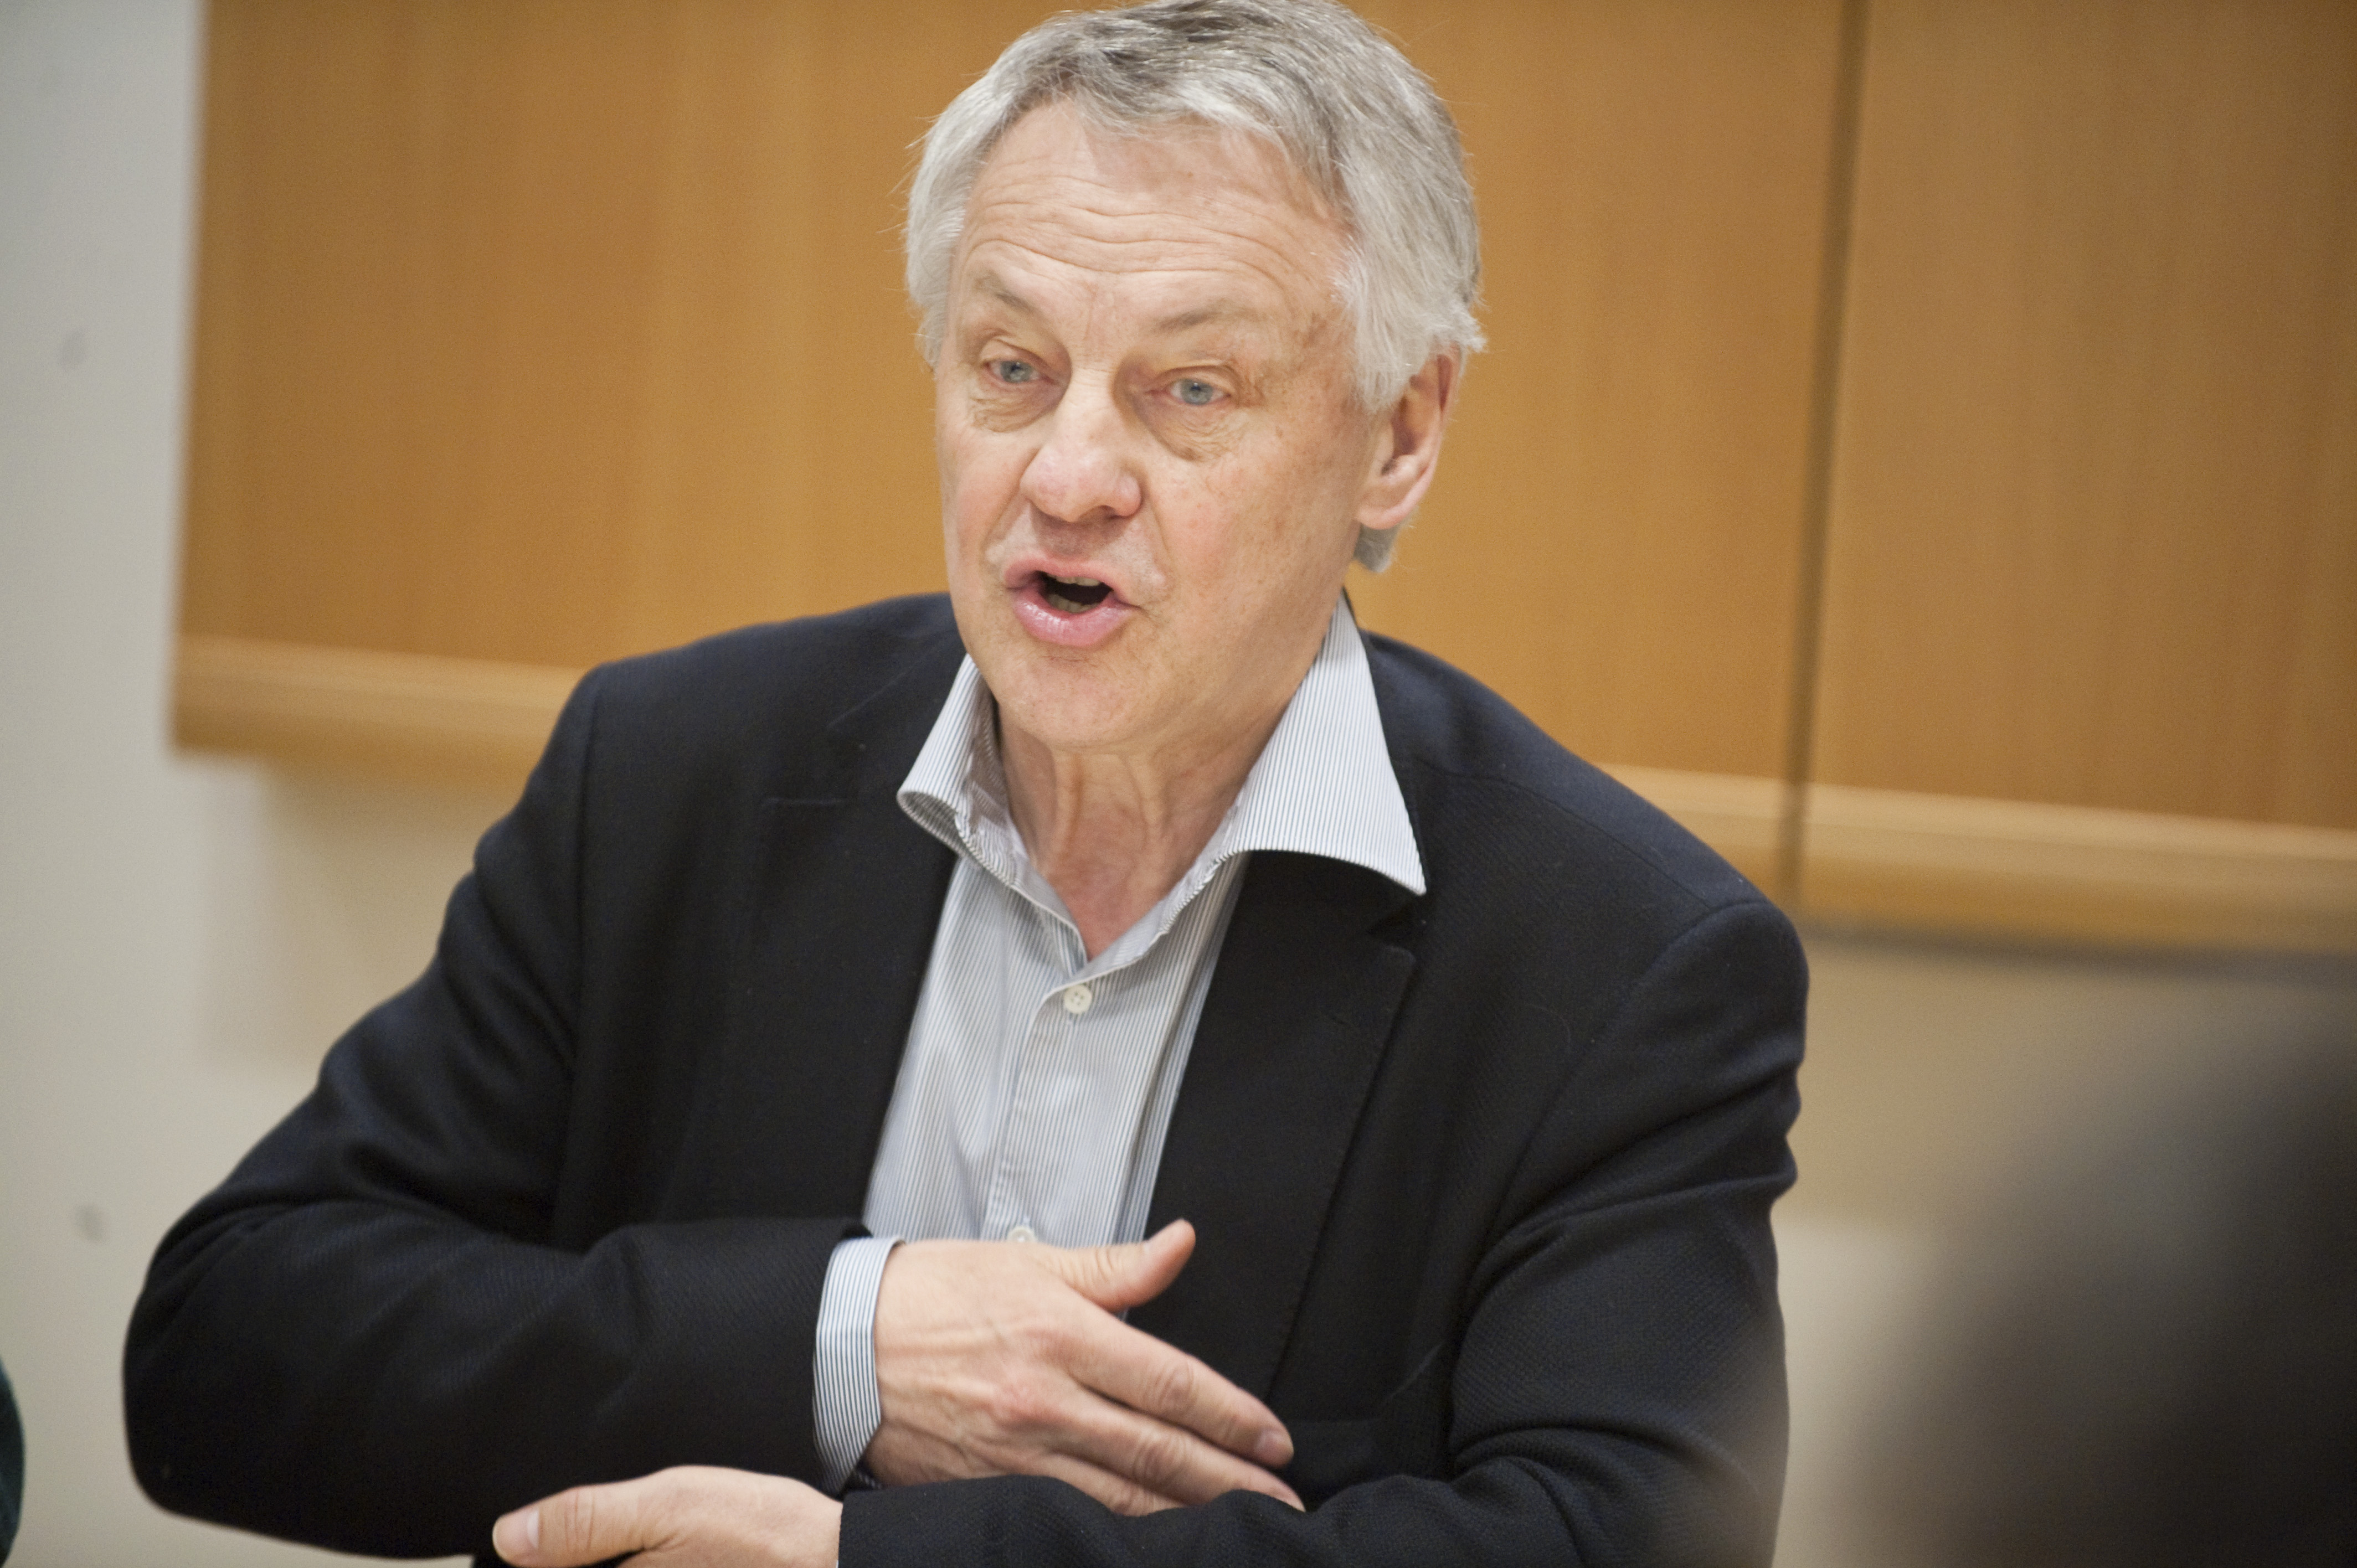 Stefan Fölster, Riksdagsvalet 2010, Statsbudget, Budget, Sverigedemokraterna, Jimmie Åkesson, Ekonomi, Tillväxt